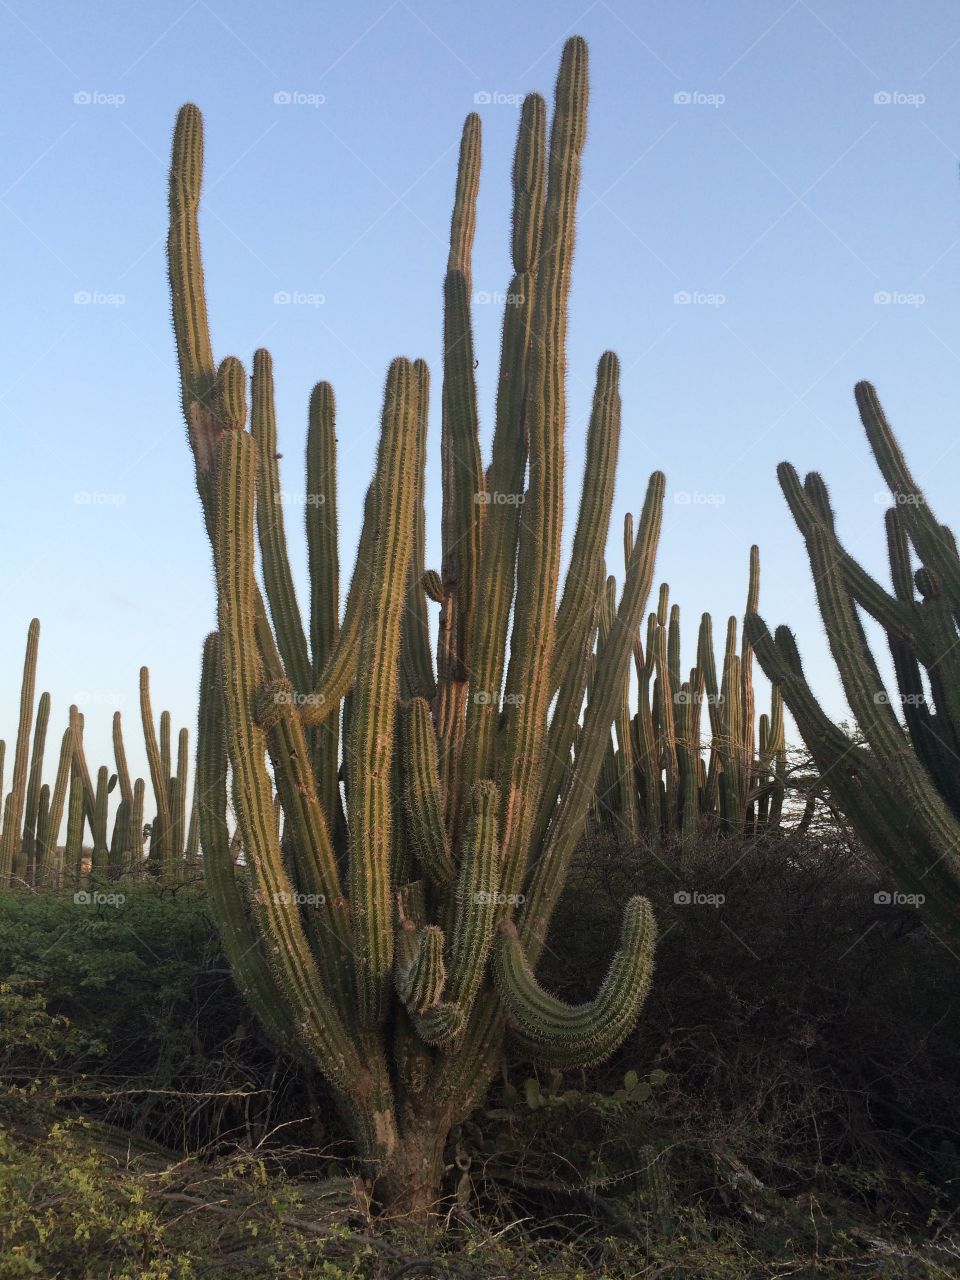 Cactus fields, Aruba